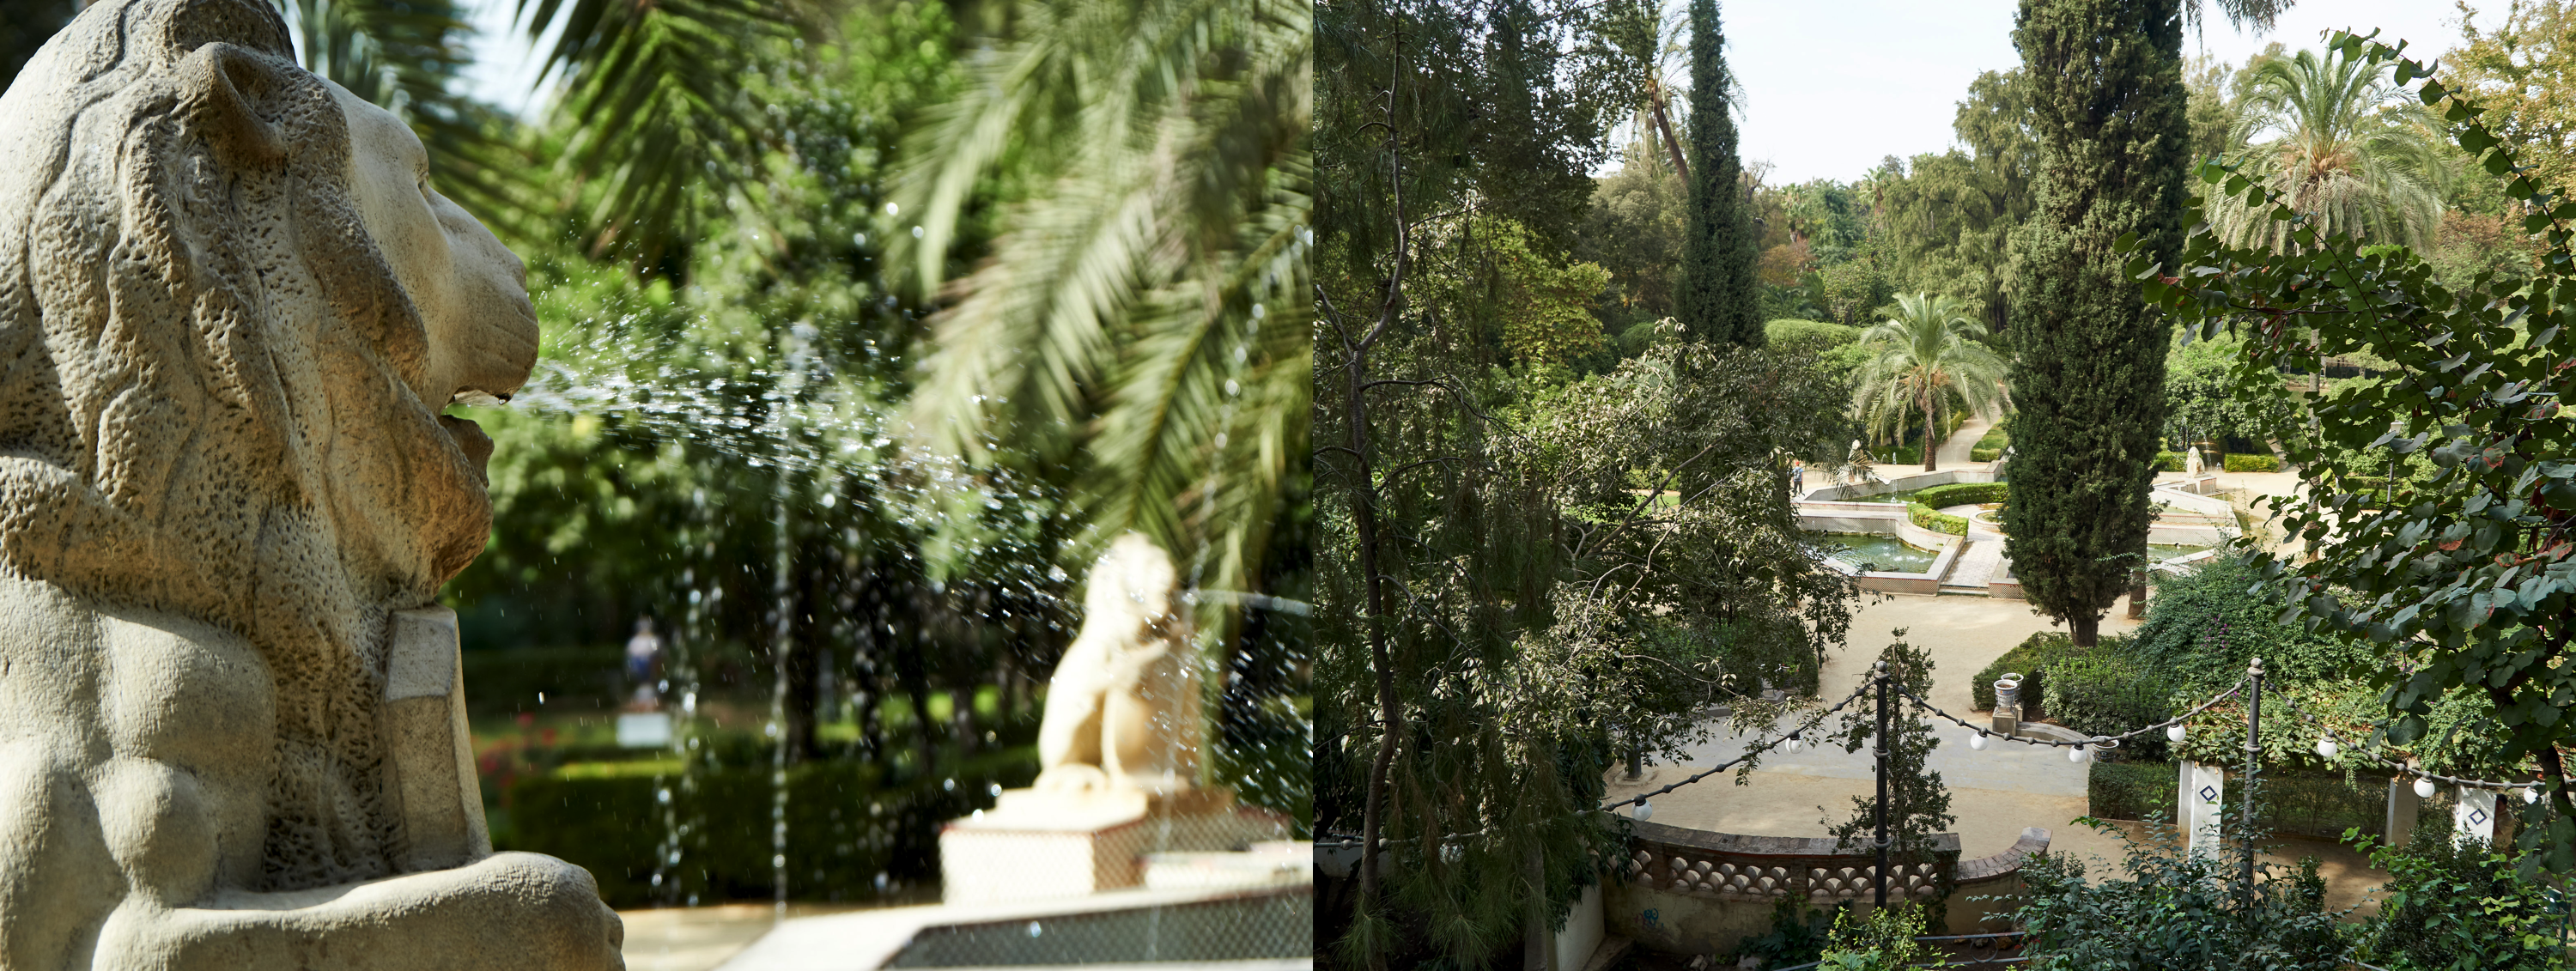 "Jardin de leones", a part of the "parque de María Luisa"